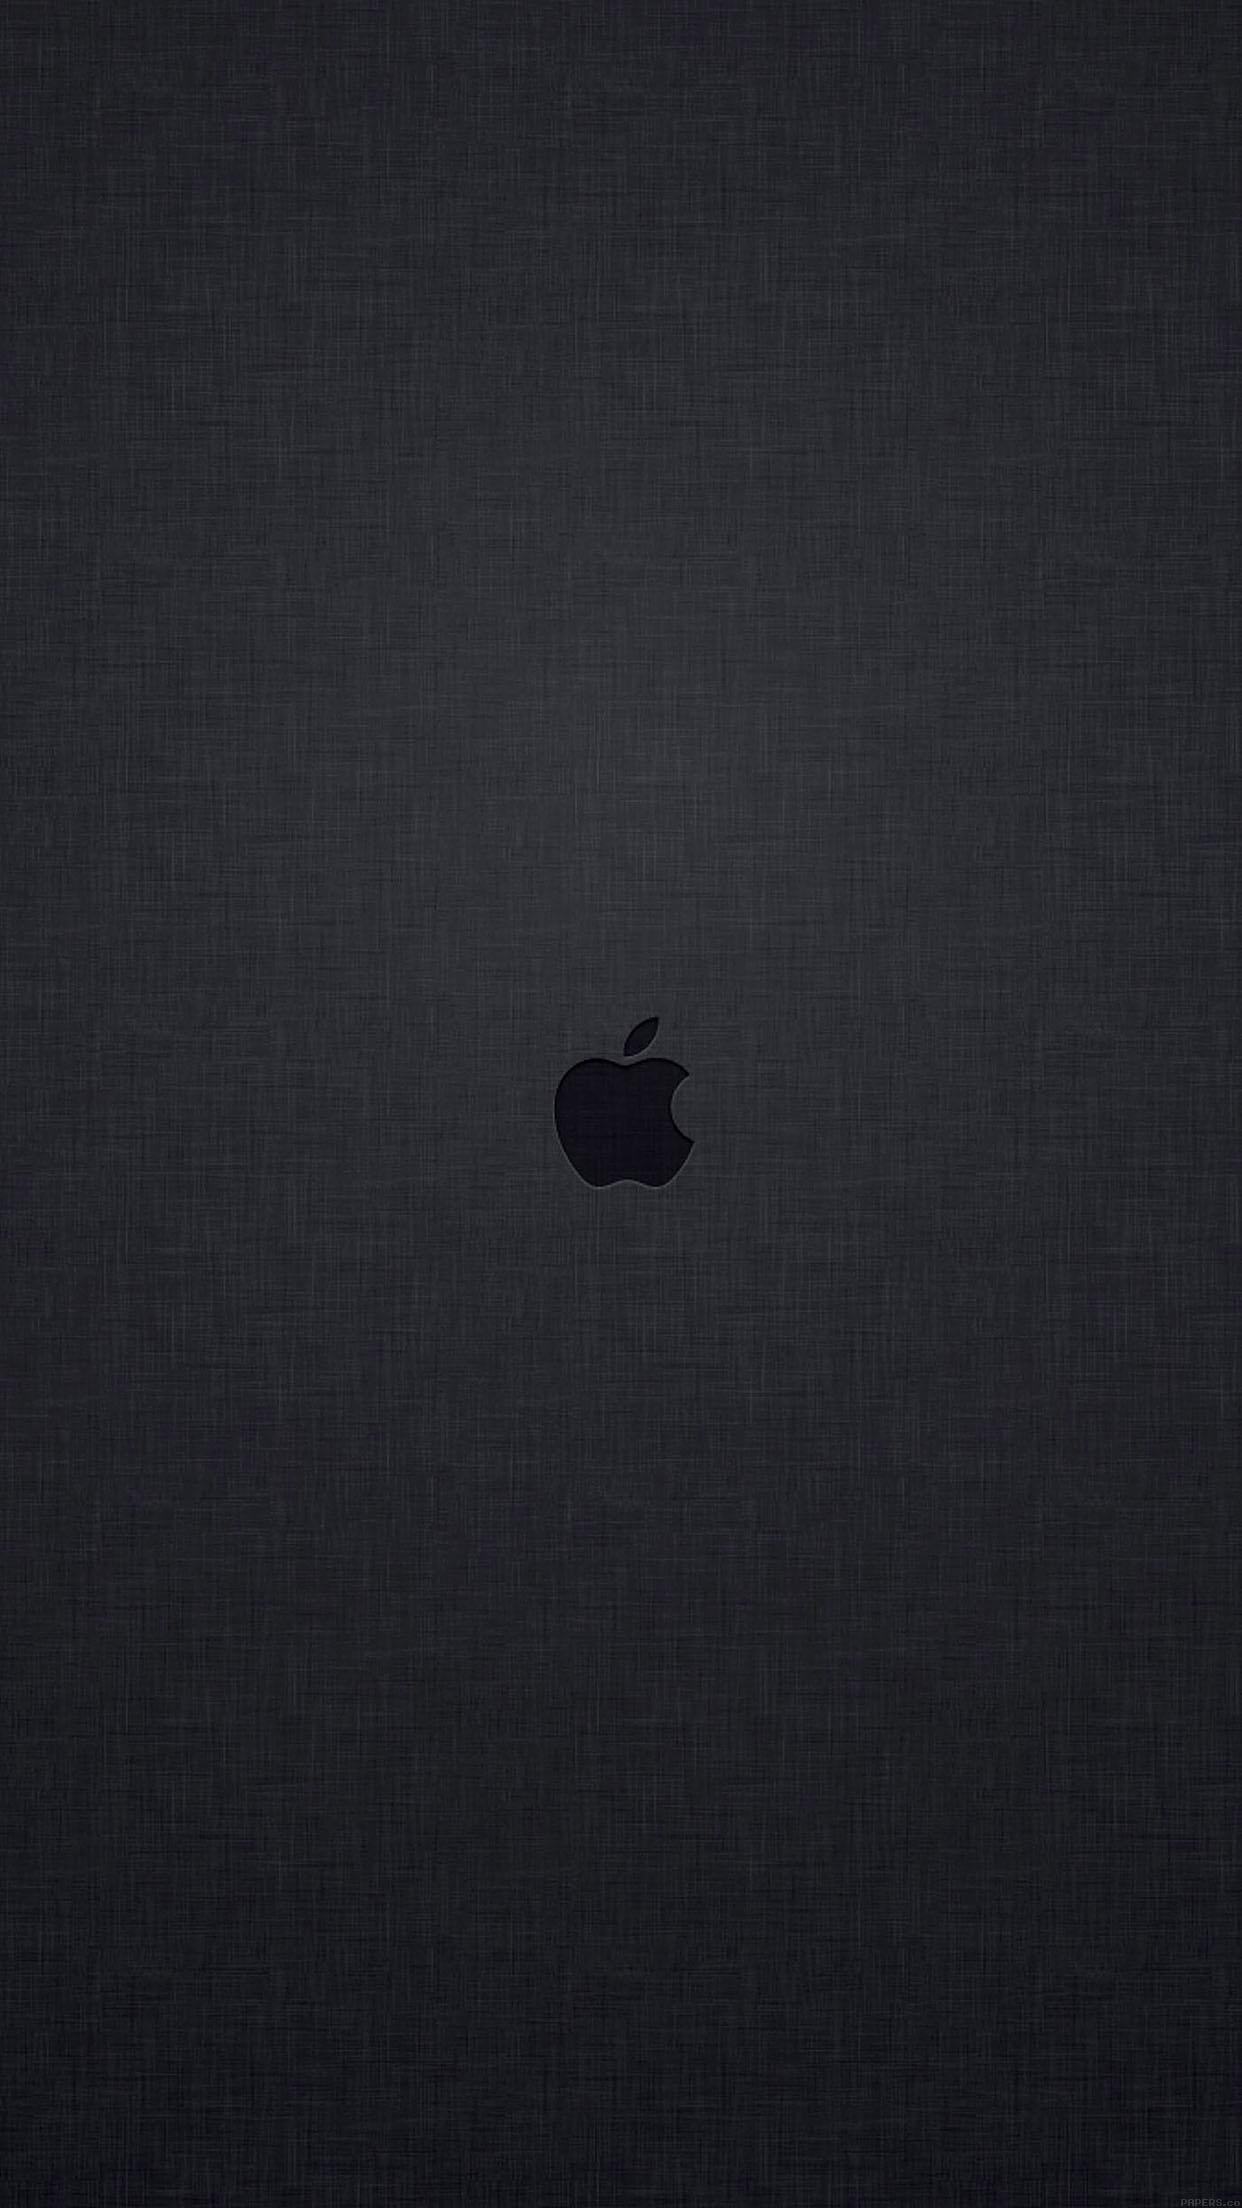 Apple iphone 6 wallpaper download